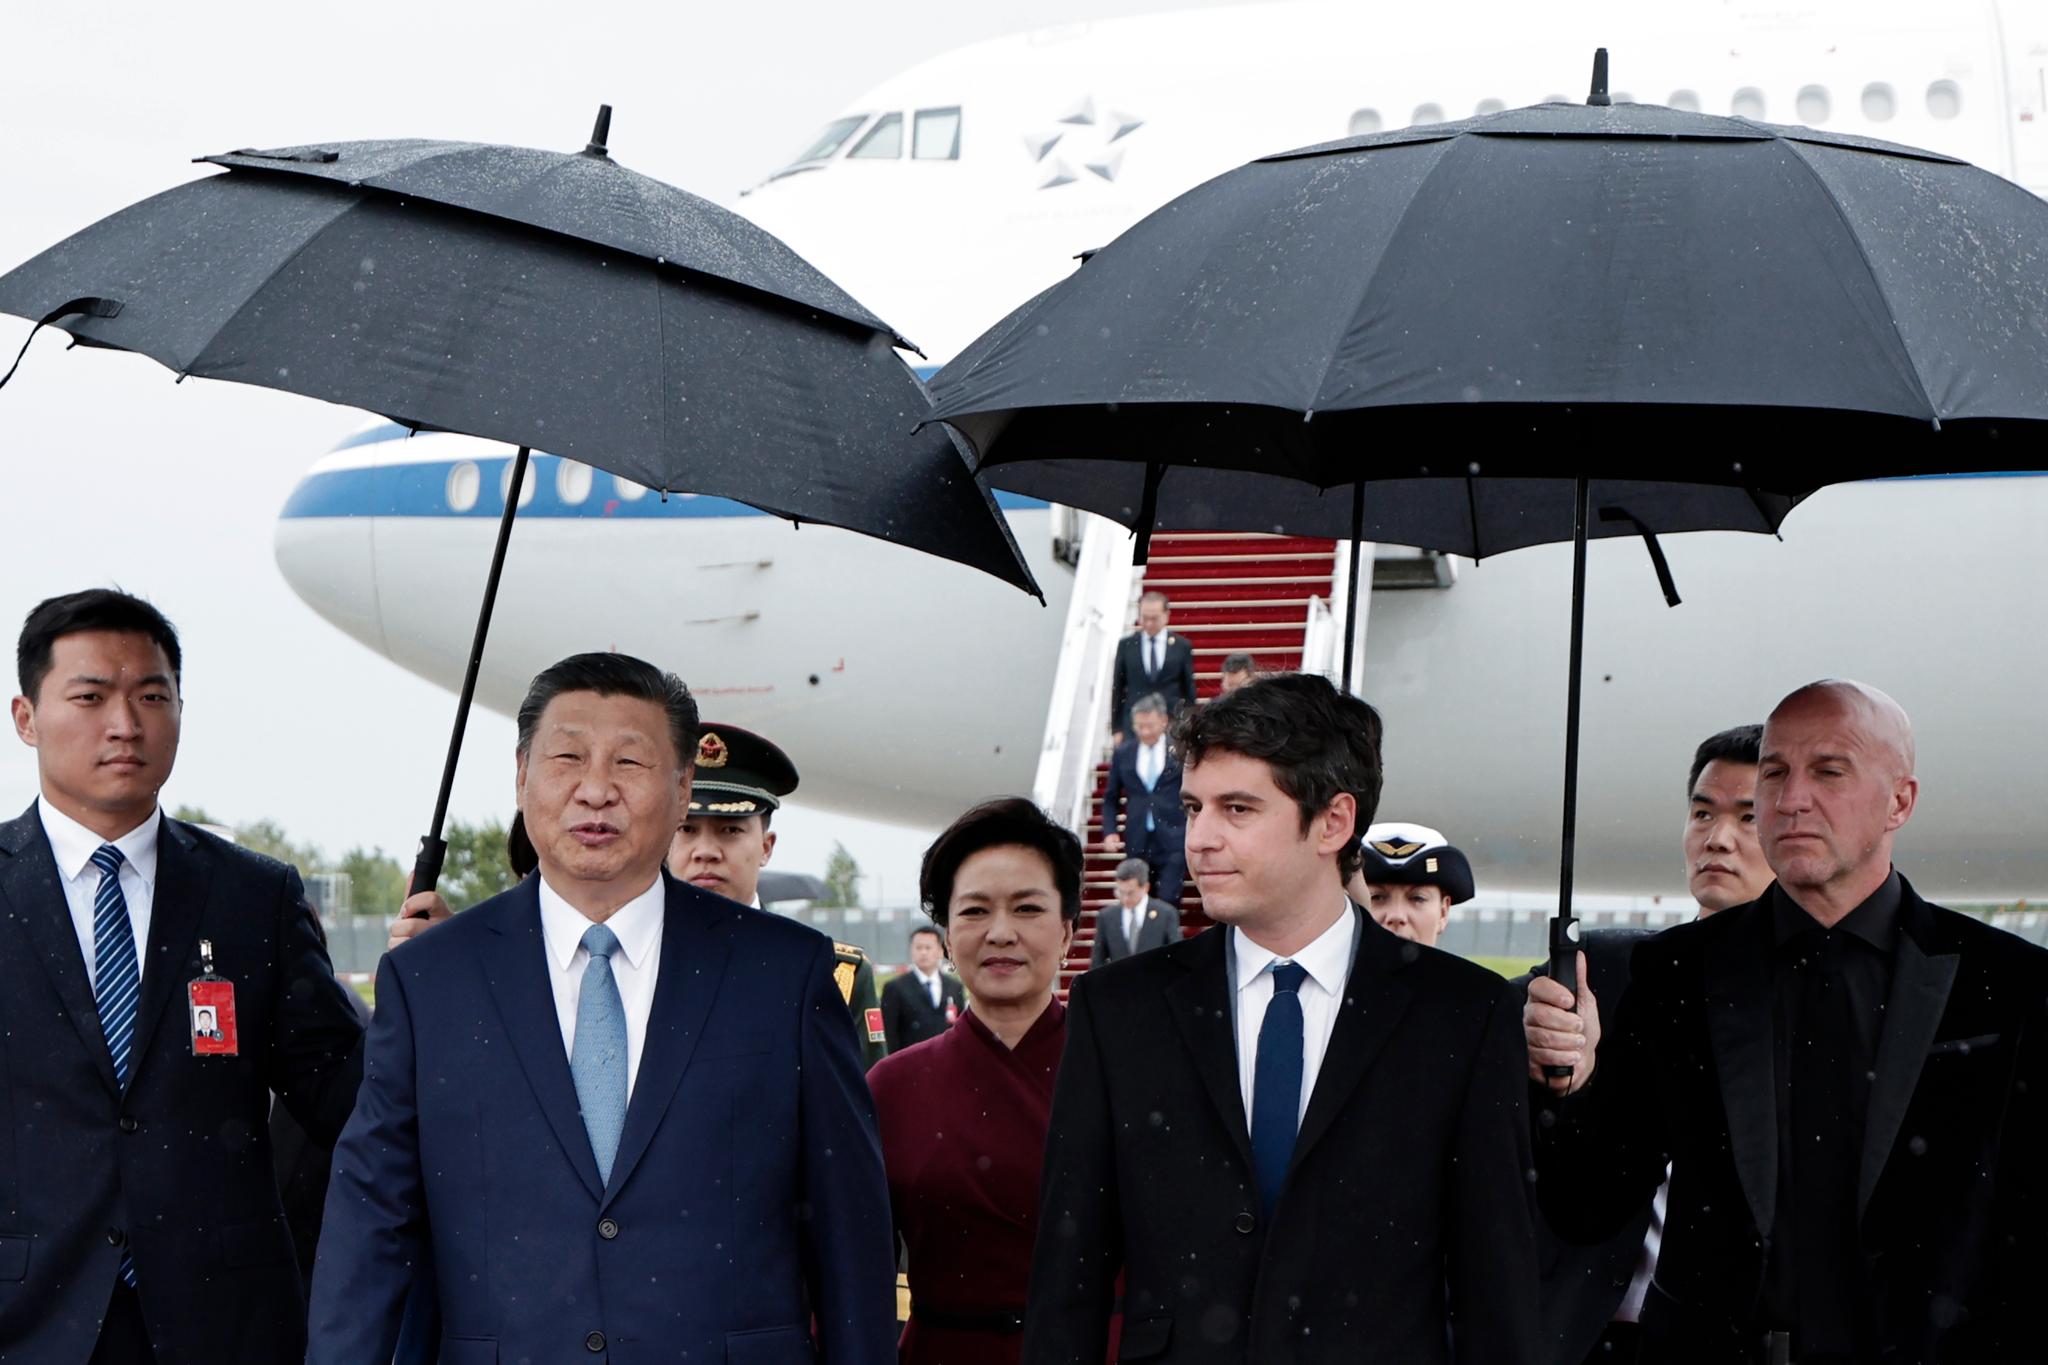 Xi Jinping è arrivato a Parigi.  Erano passati cinque anni dall’ultima volta che era stato nell’Europa occidentale.  Questo è ciò che vuole ottenere.